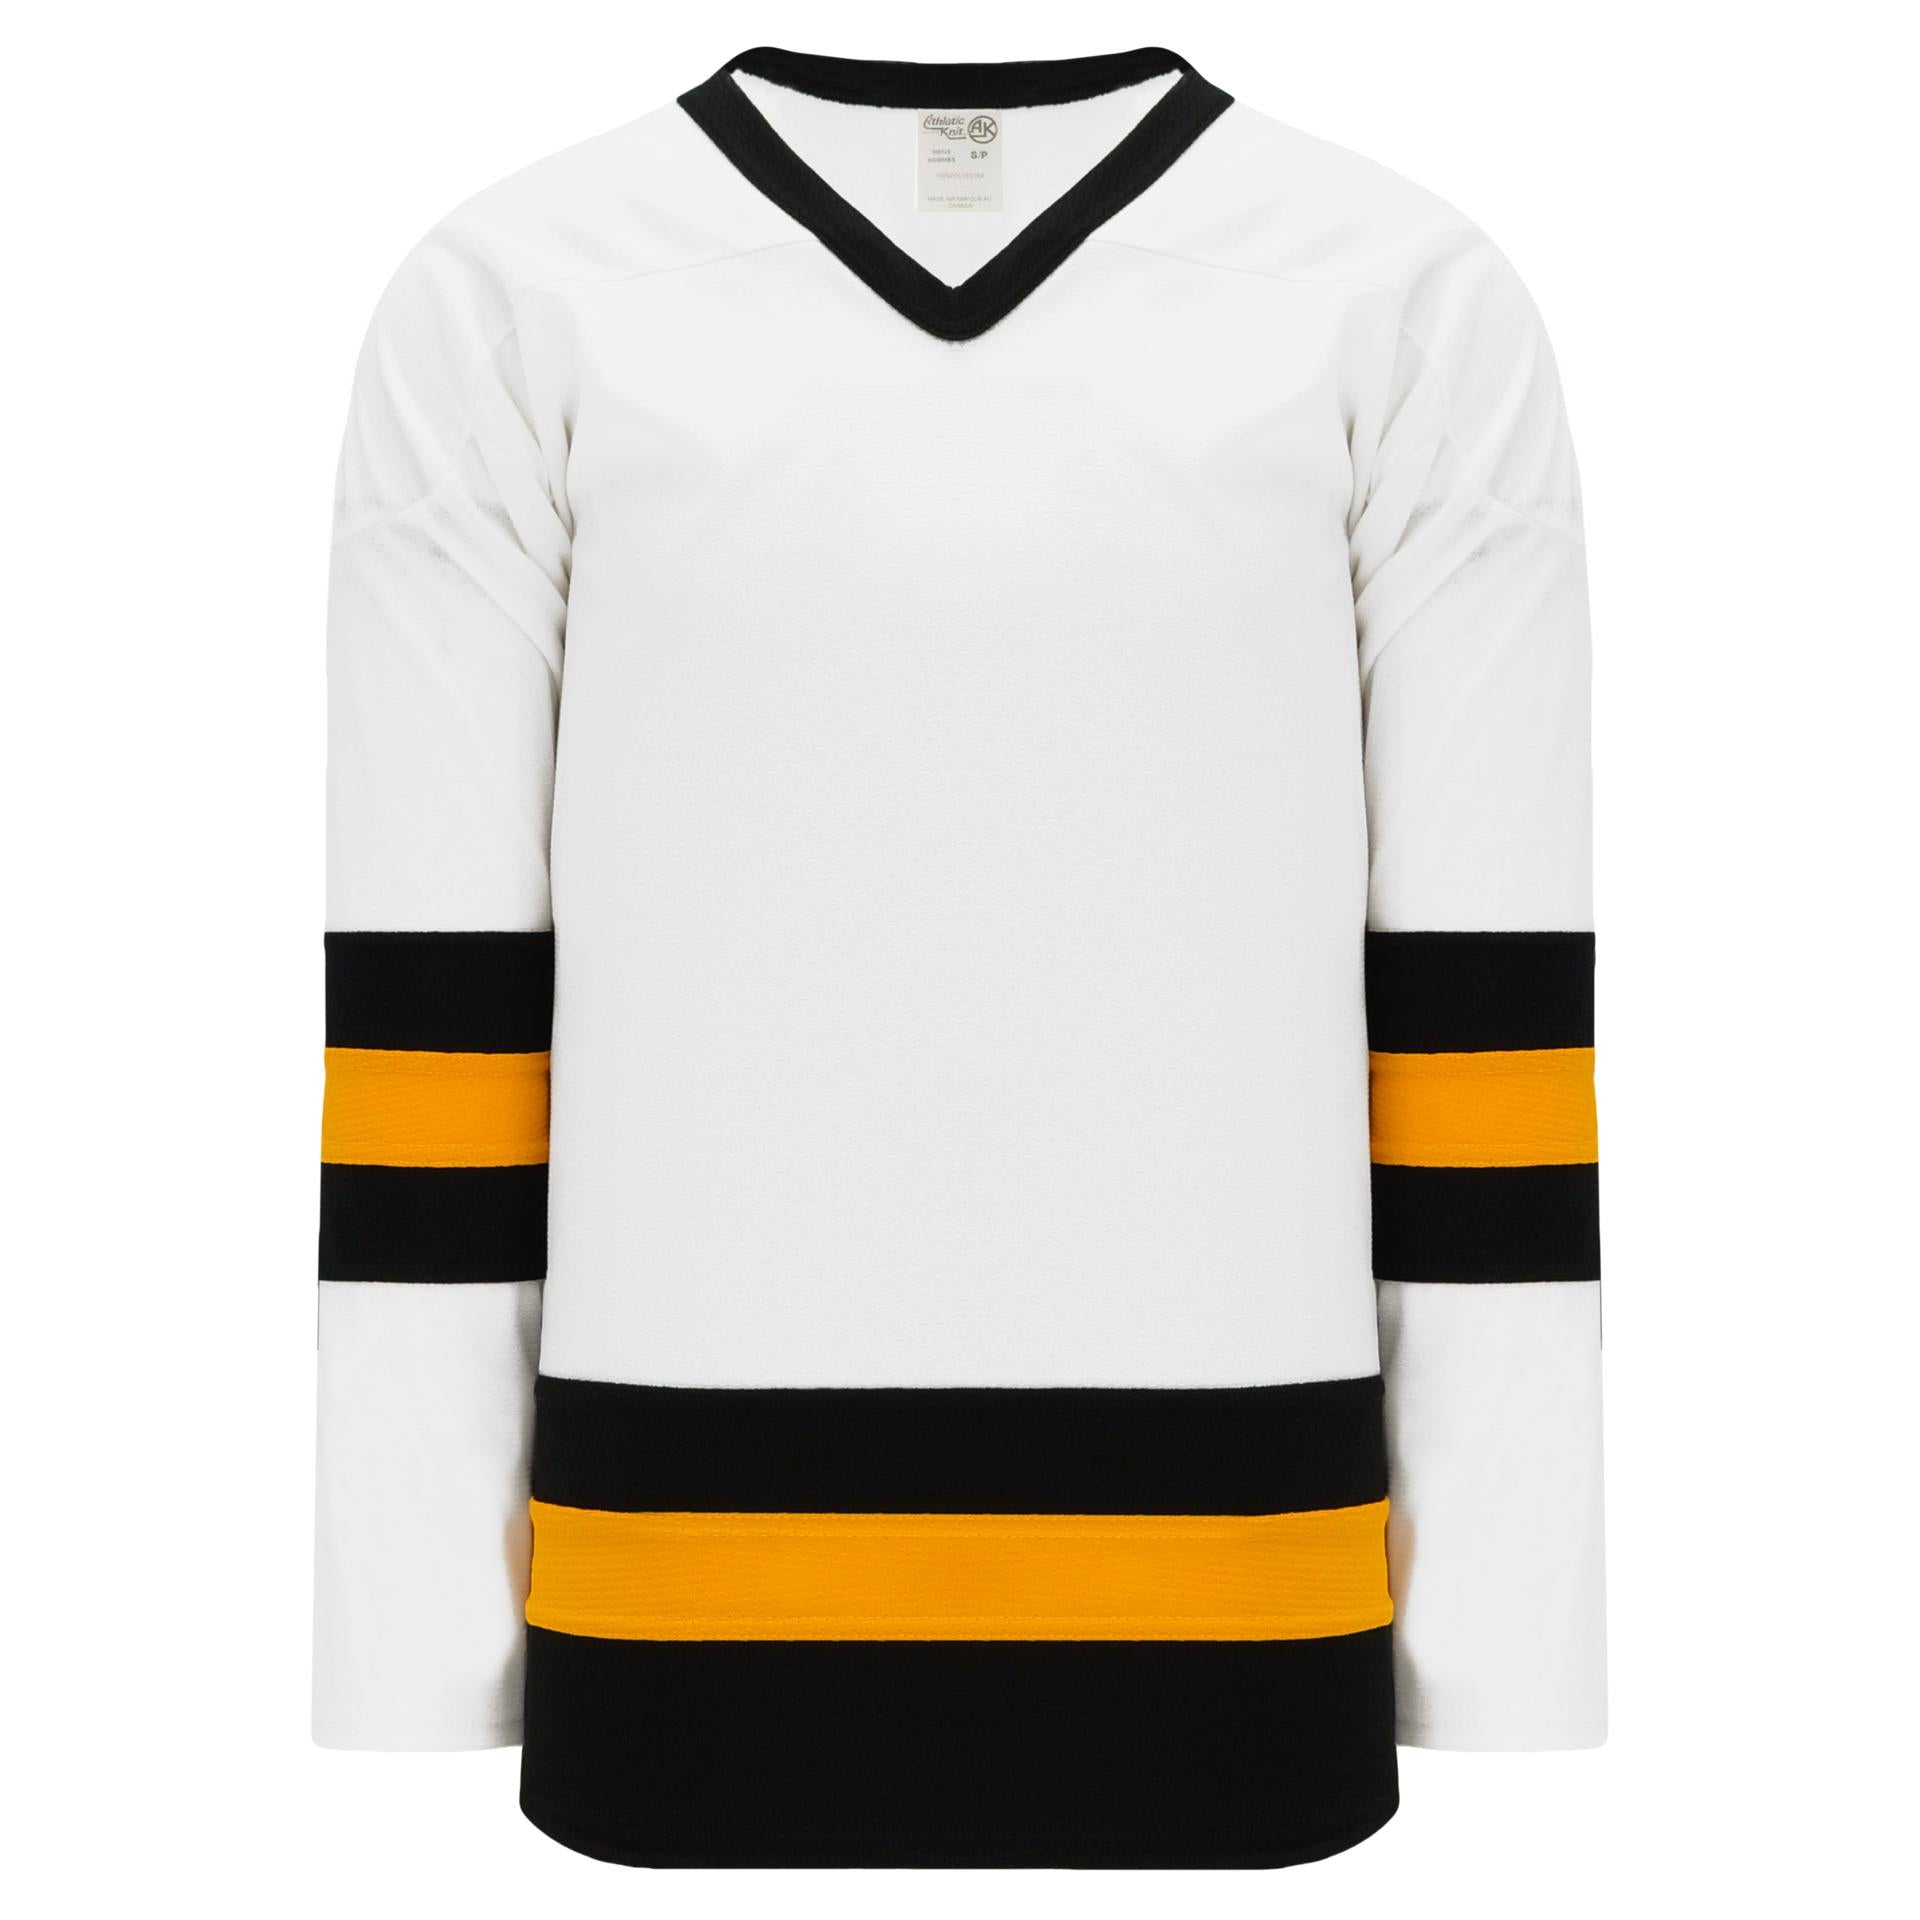 Custom Hockey Jersey Black Gold-White Hockey Lace Neck Jersey Women's Size:L